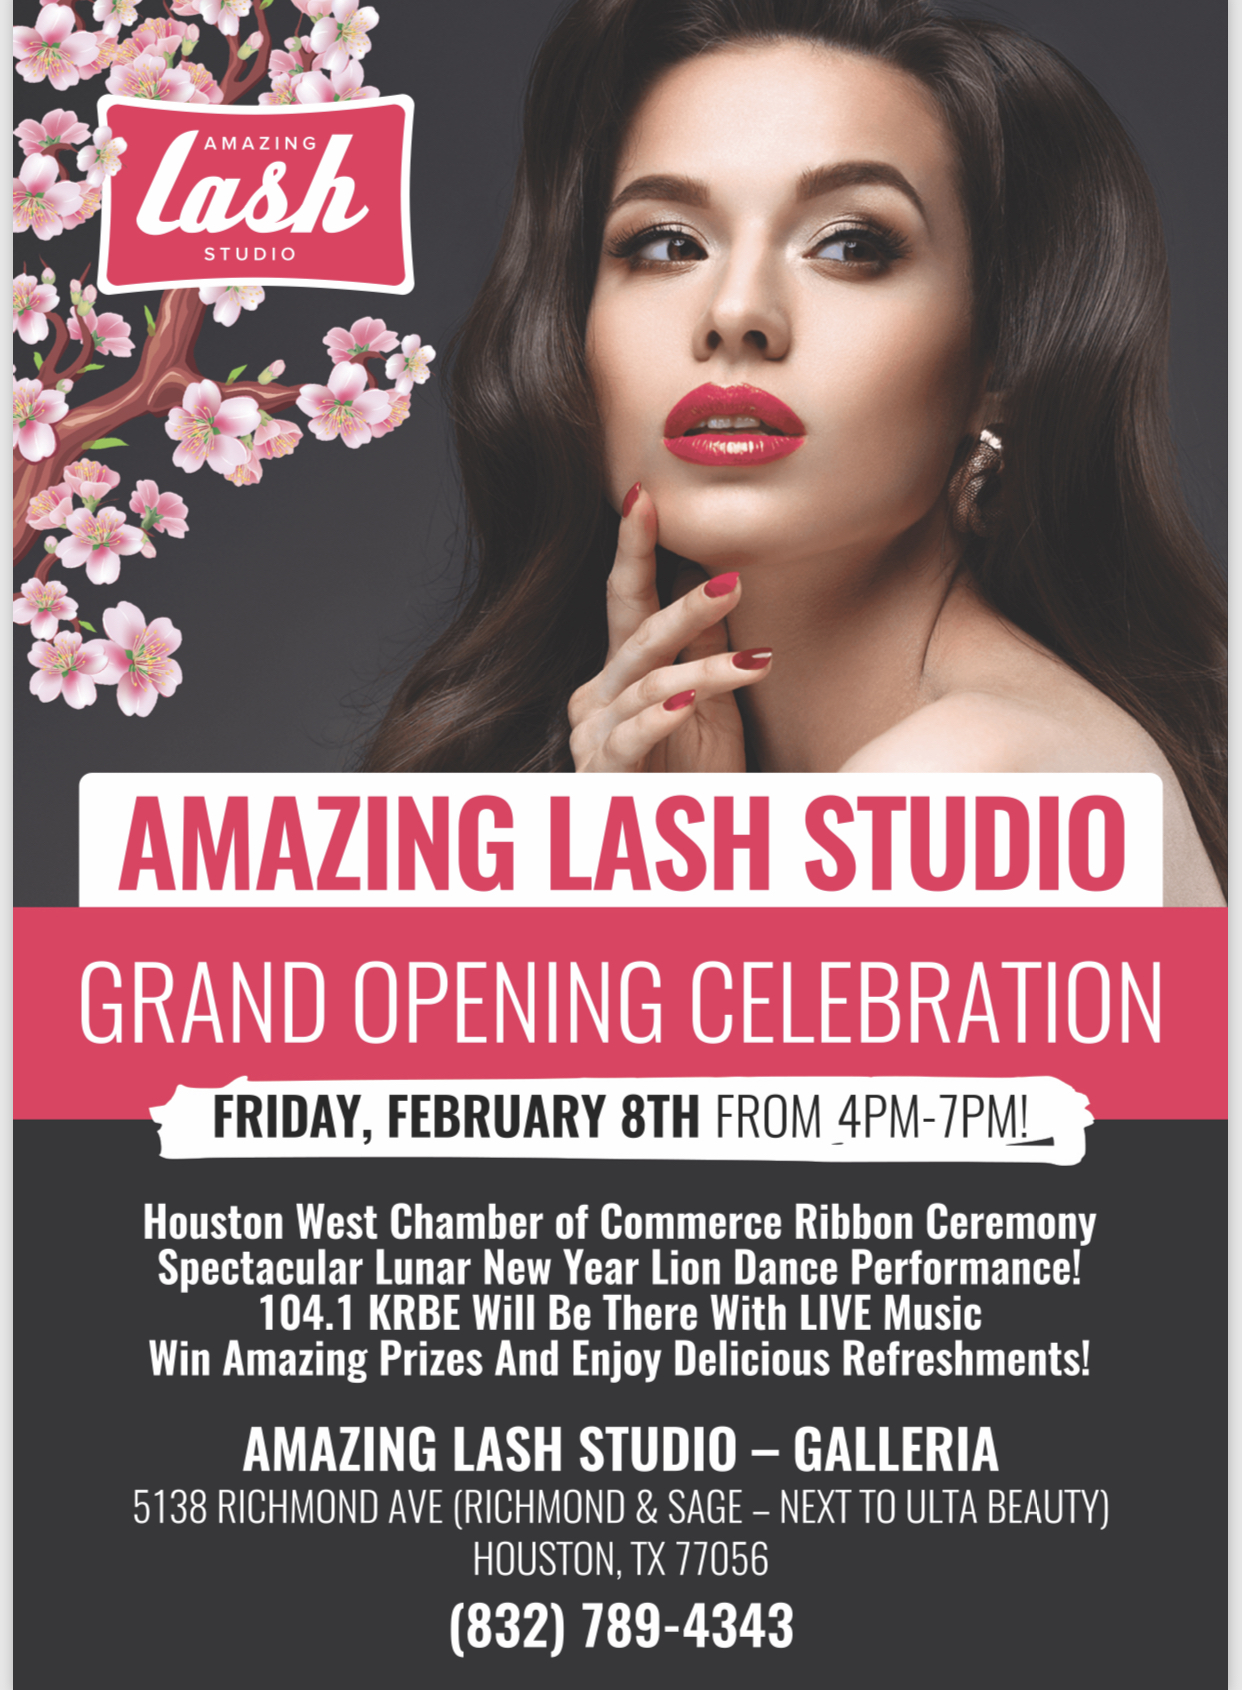 Amazing Lash Grand Opening flier for the Galleria Studio